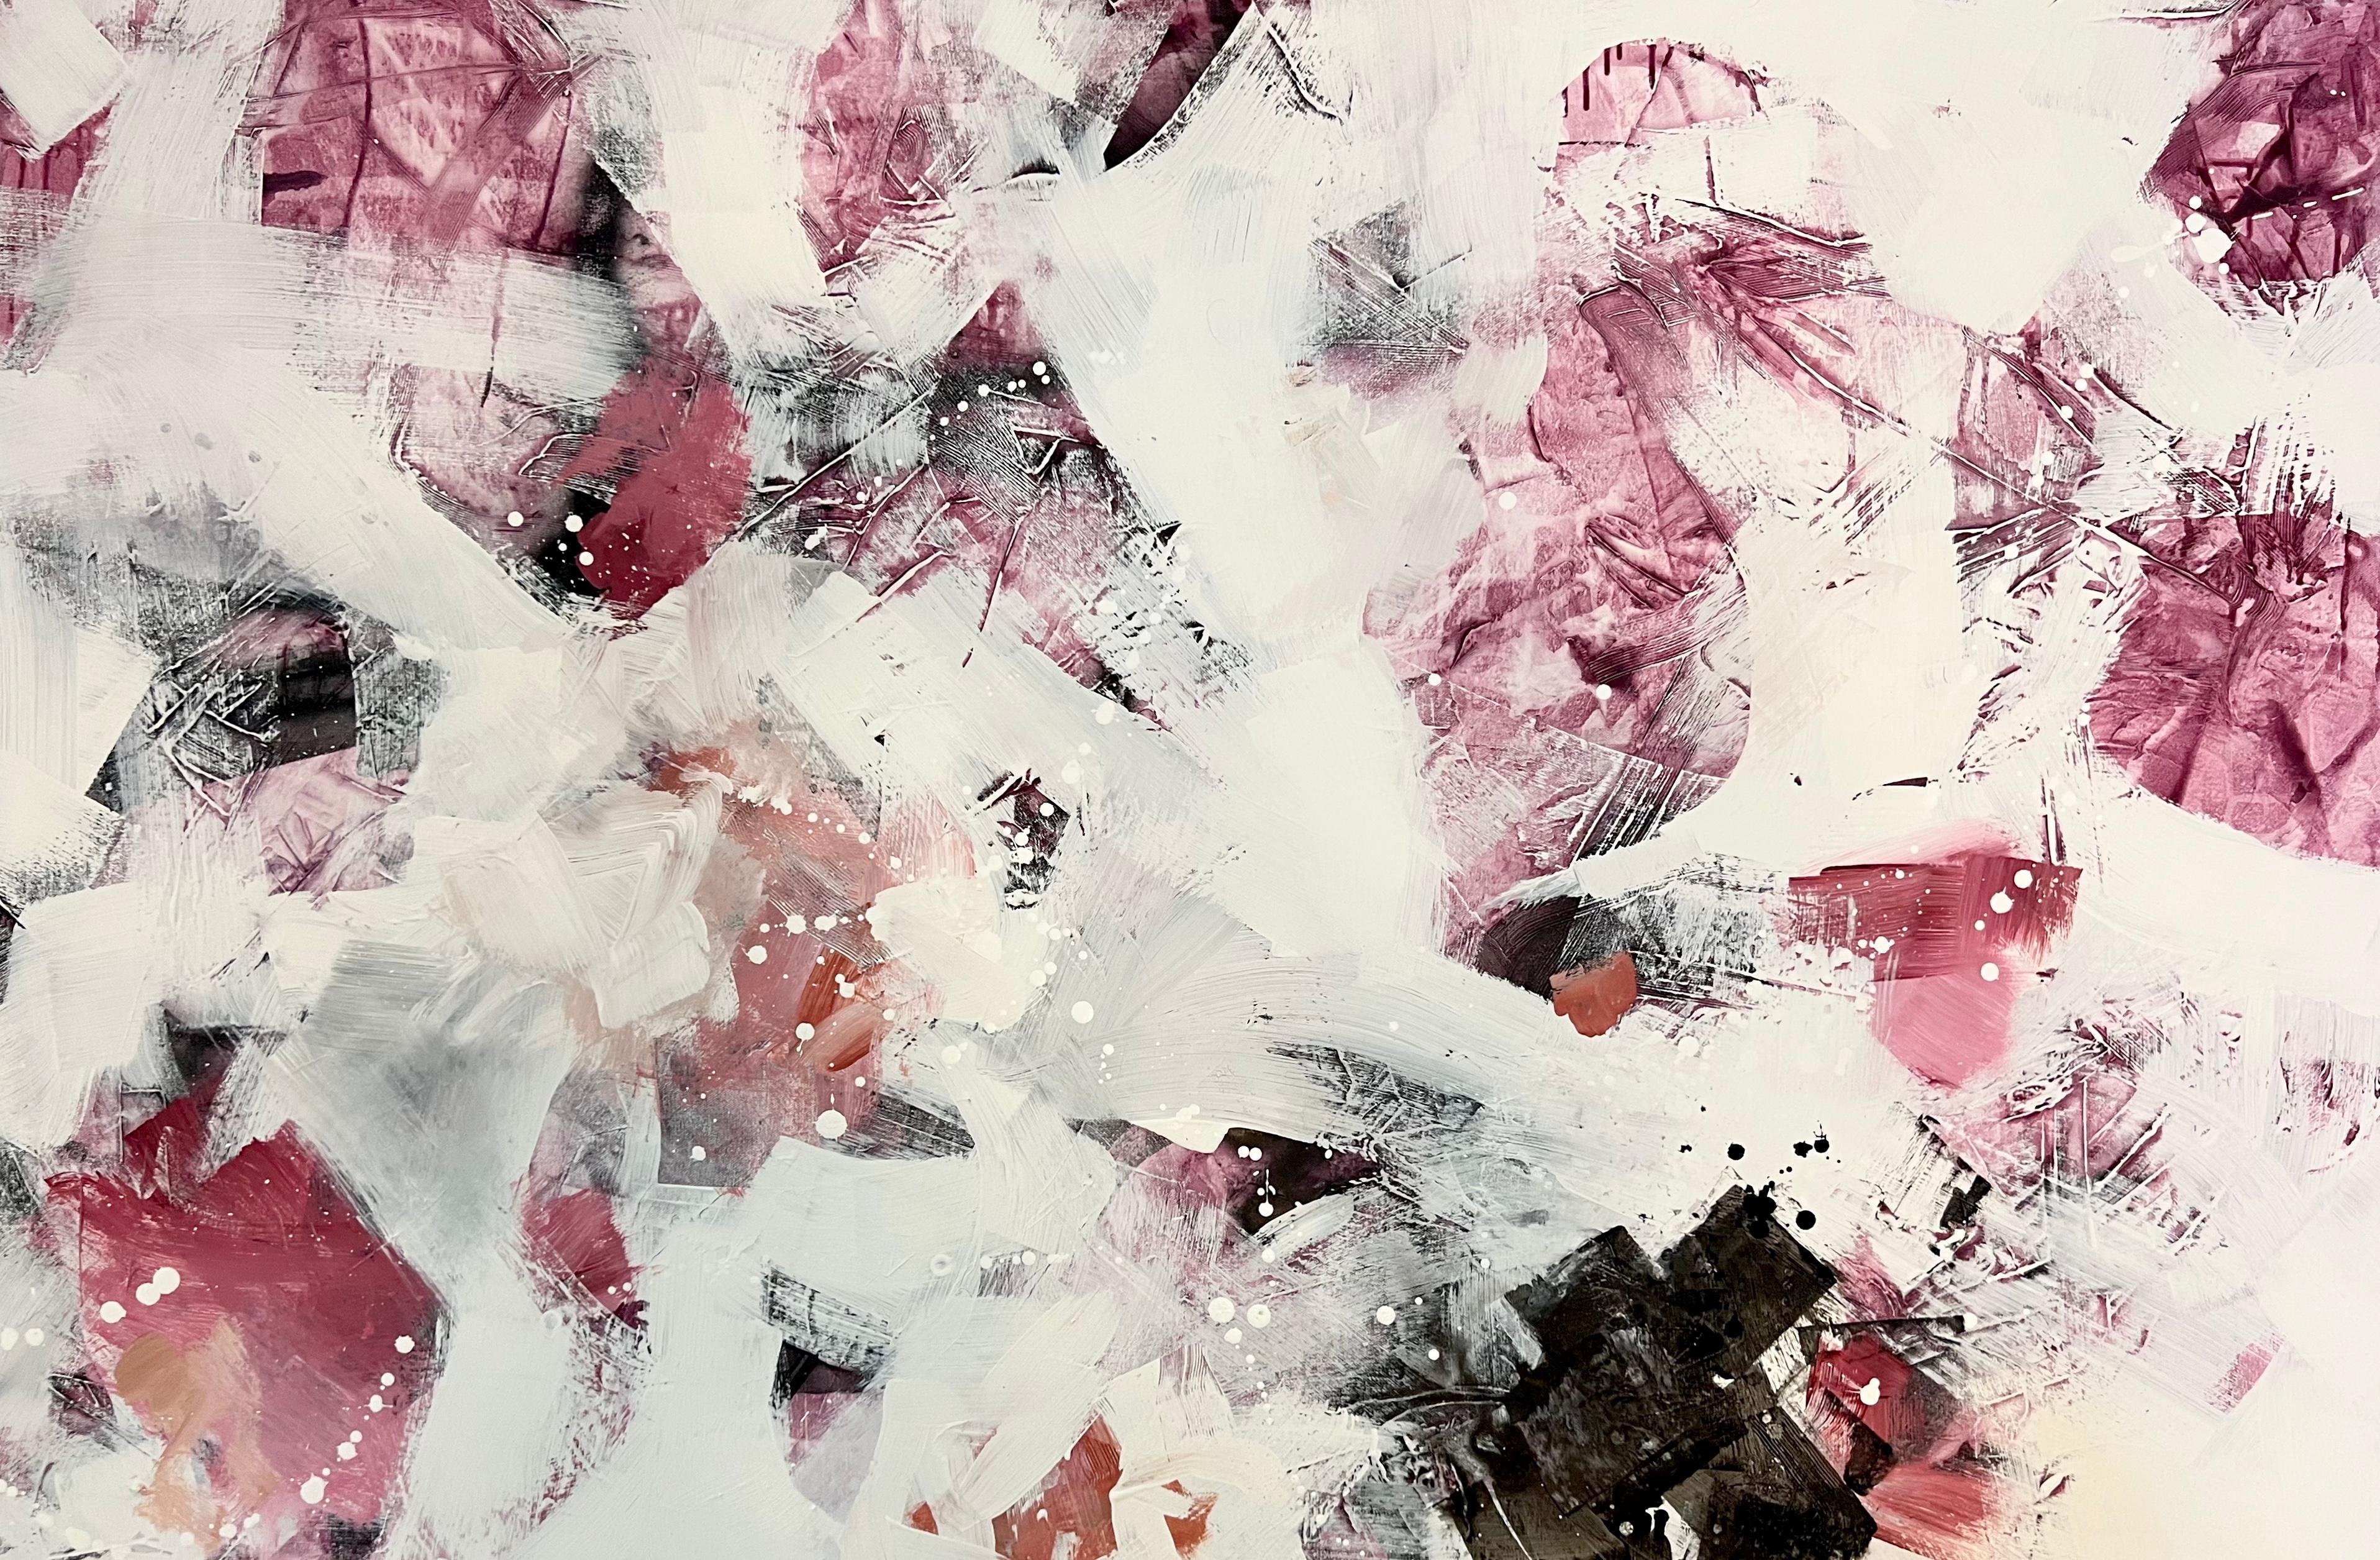 Annie Mandelkern Abstract Painting – Bittersweet Symphony, Mischtechnik, Abstraktes Gemälde auf Leinwand, signiert 